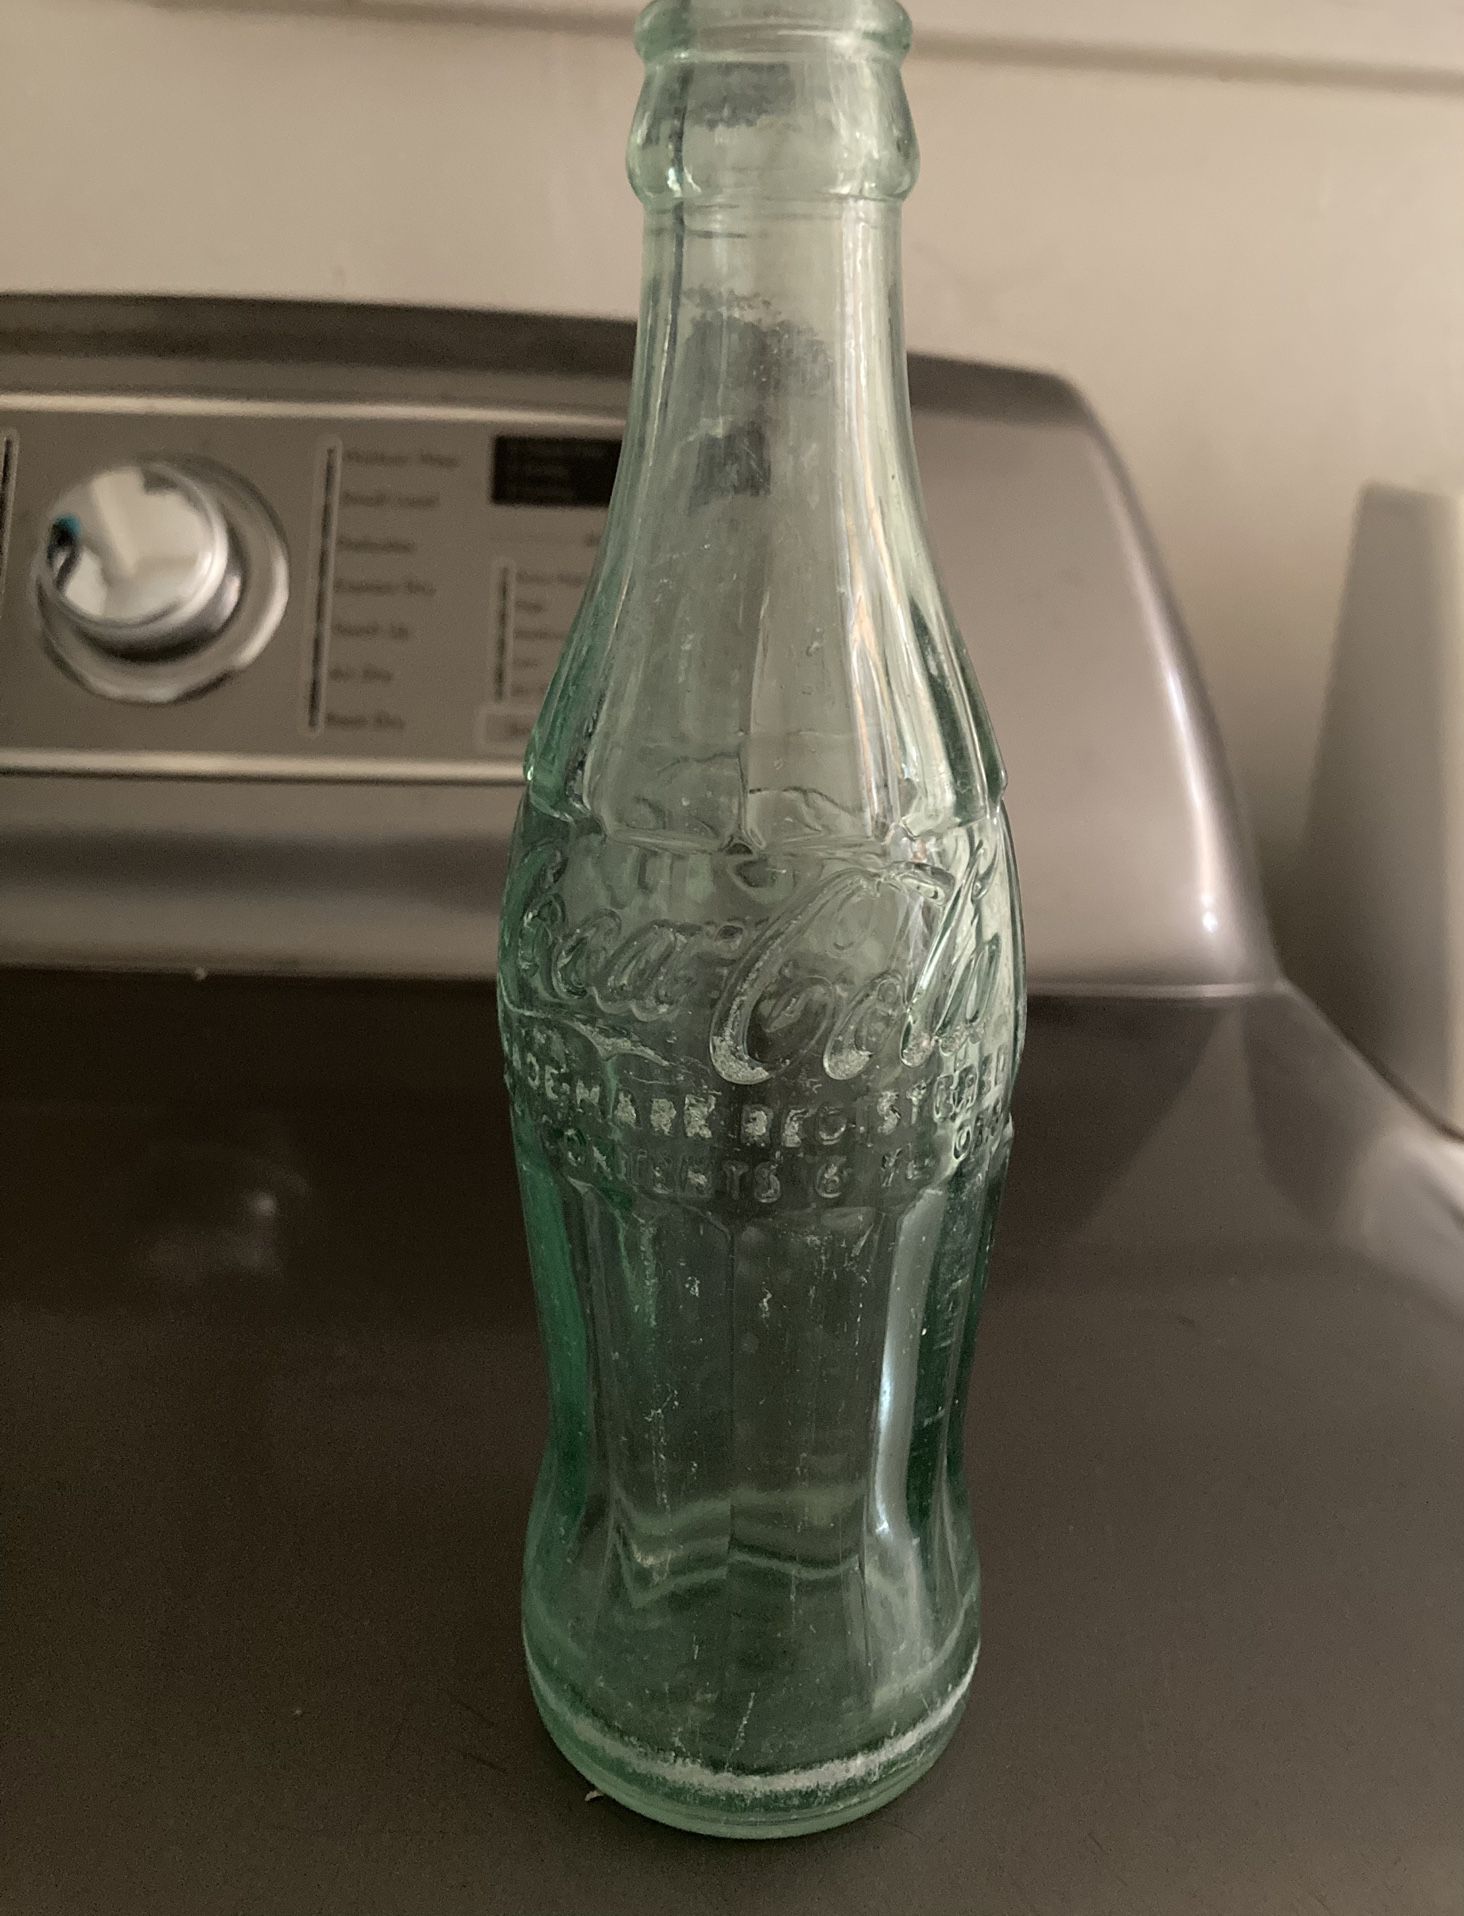 Coca Cola Bottle 1960 Vintage Green